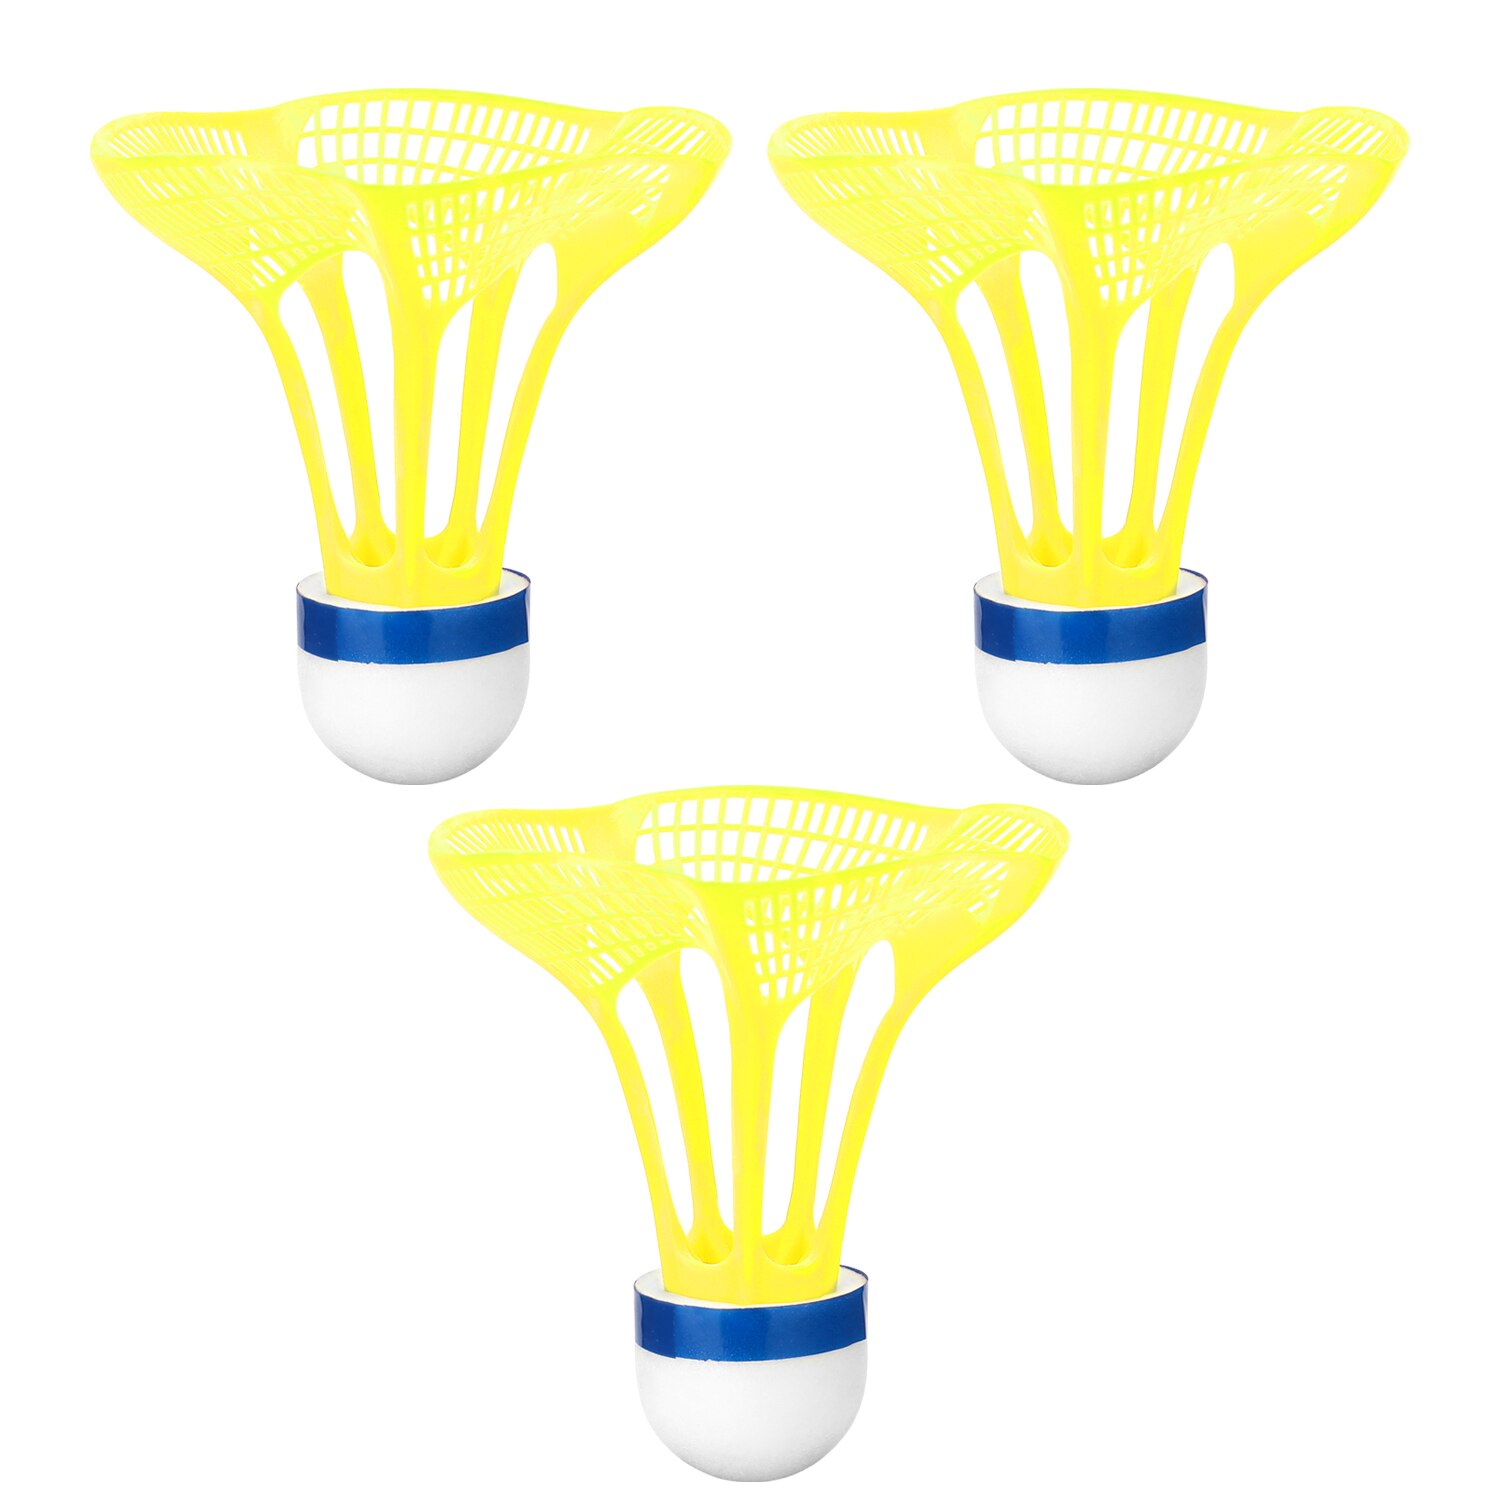 3 stk / pakke udendørs badmintonbold plastbold sport træning træningsbolte farve badmintonbold: Gul